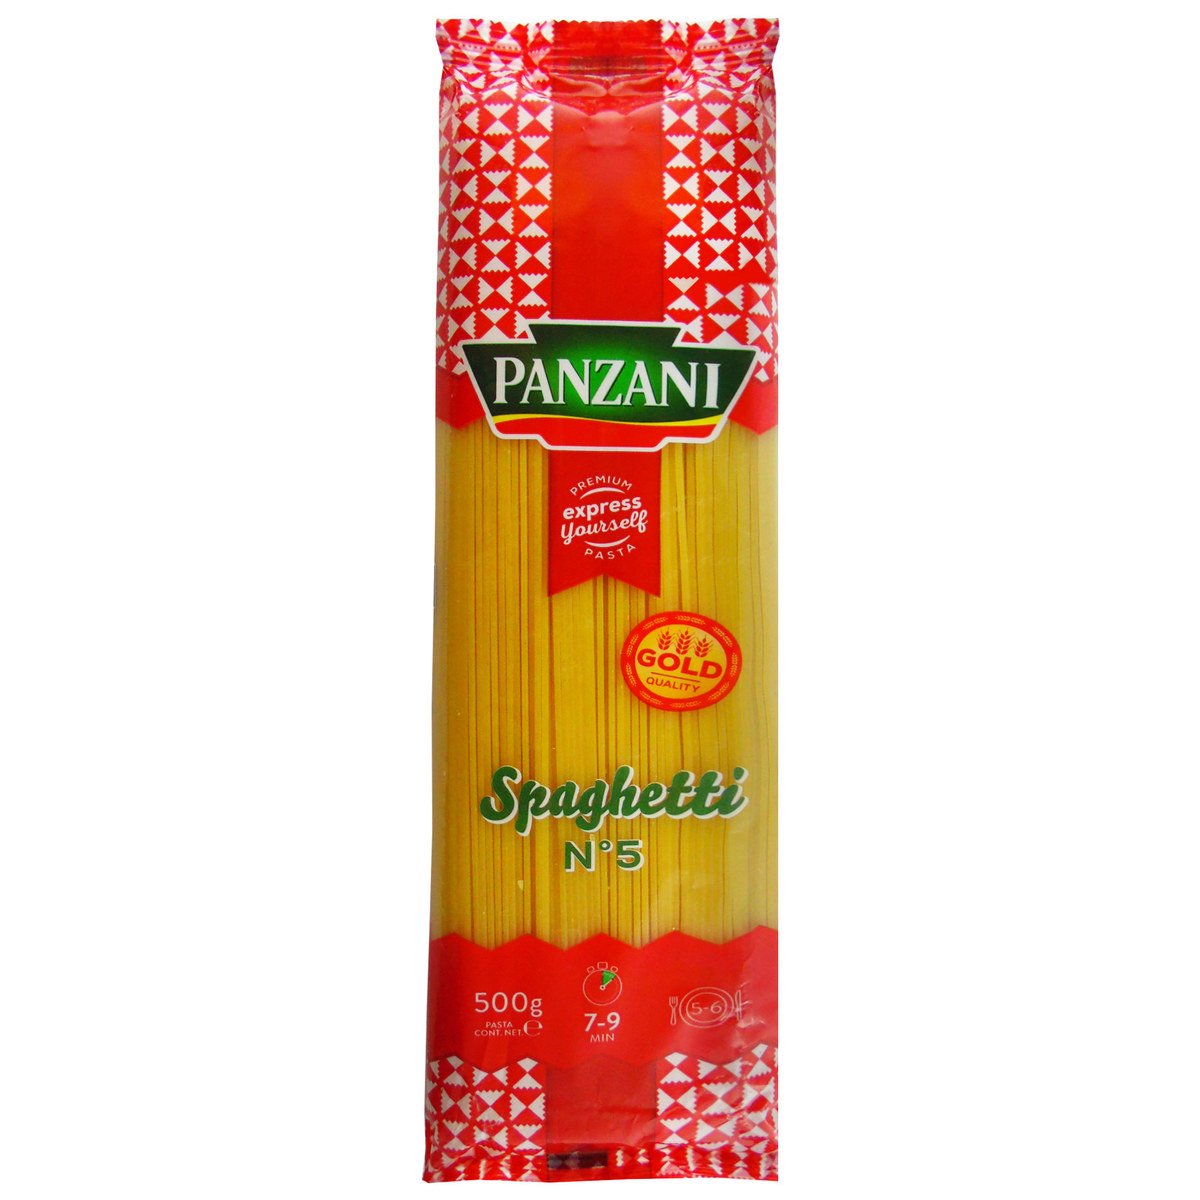 Panzani Spaghetti No.5 500g